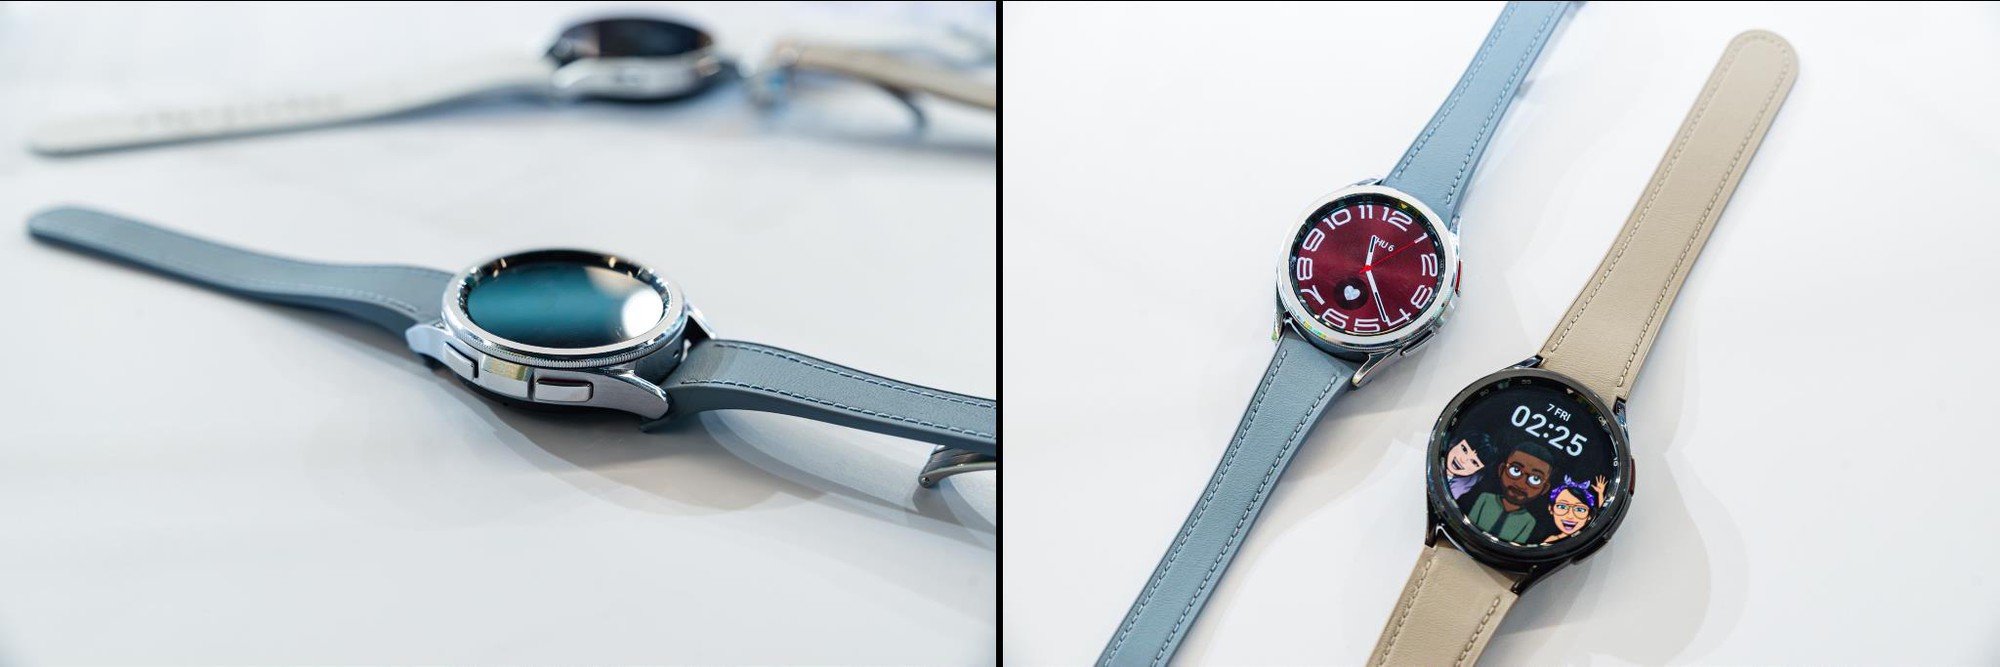 Hơn cả một phụ kiện thời trang, Galaxy Watch6 biến người dùng thành “chuyên gia” chăm sóc sức khỏe của chính mình - Ảnh 5.